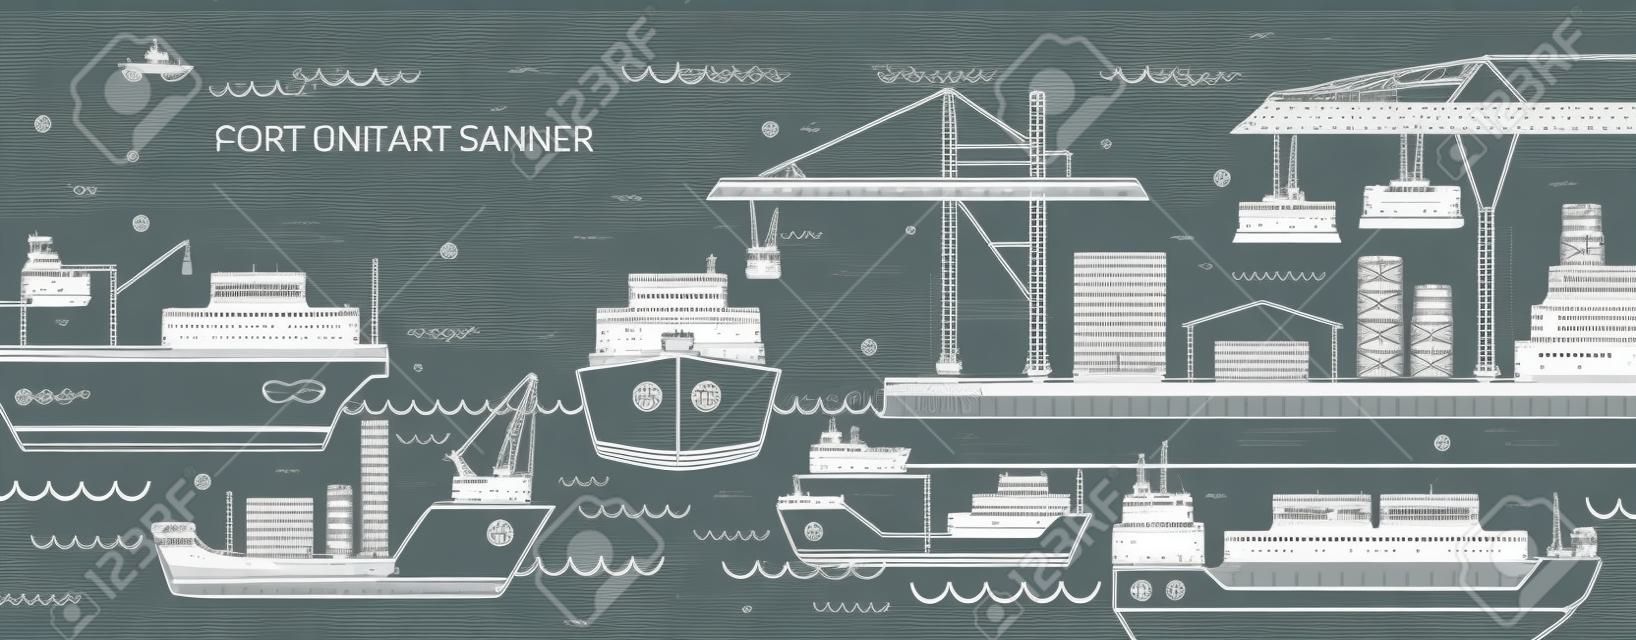 Horizontale banner met zeehaven, zeevrachtterminal, vrachtschepen of schepen die containers met contourlijnen vervoeren. Zeevervoer. Monochrome vector illustratie in lineaire stijl